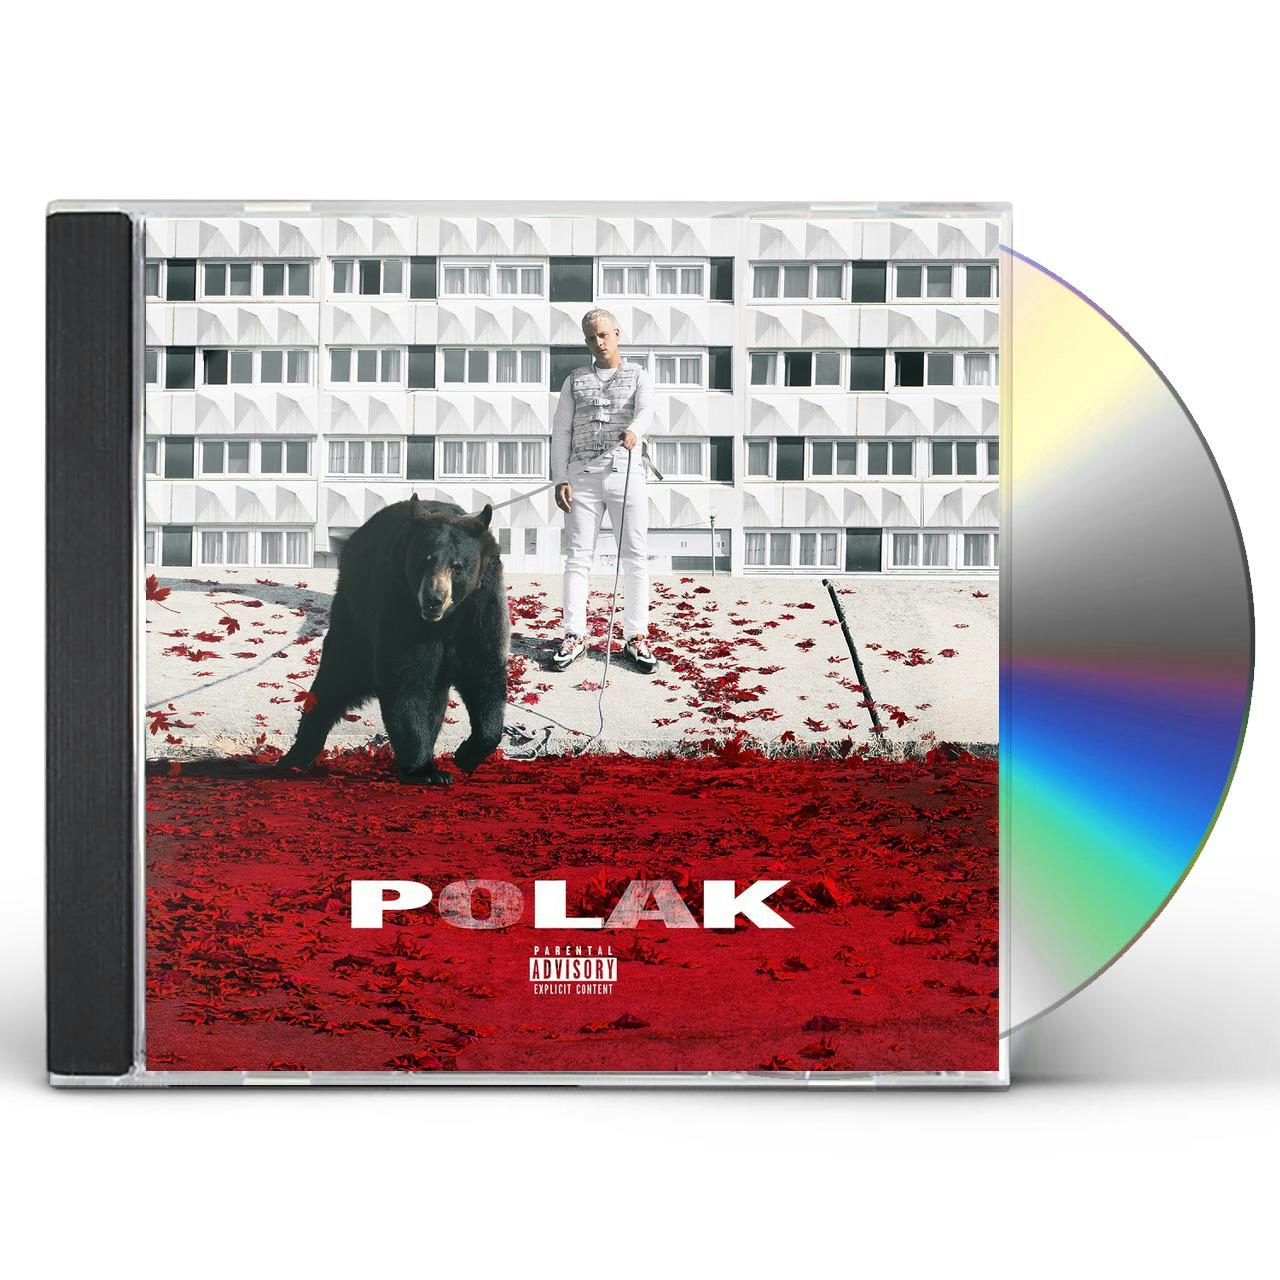 plk polak album cover